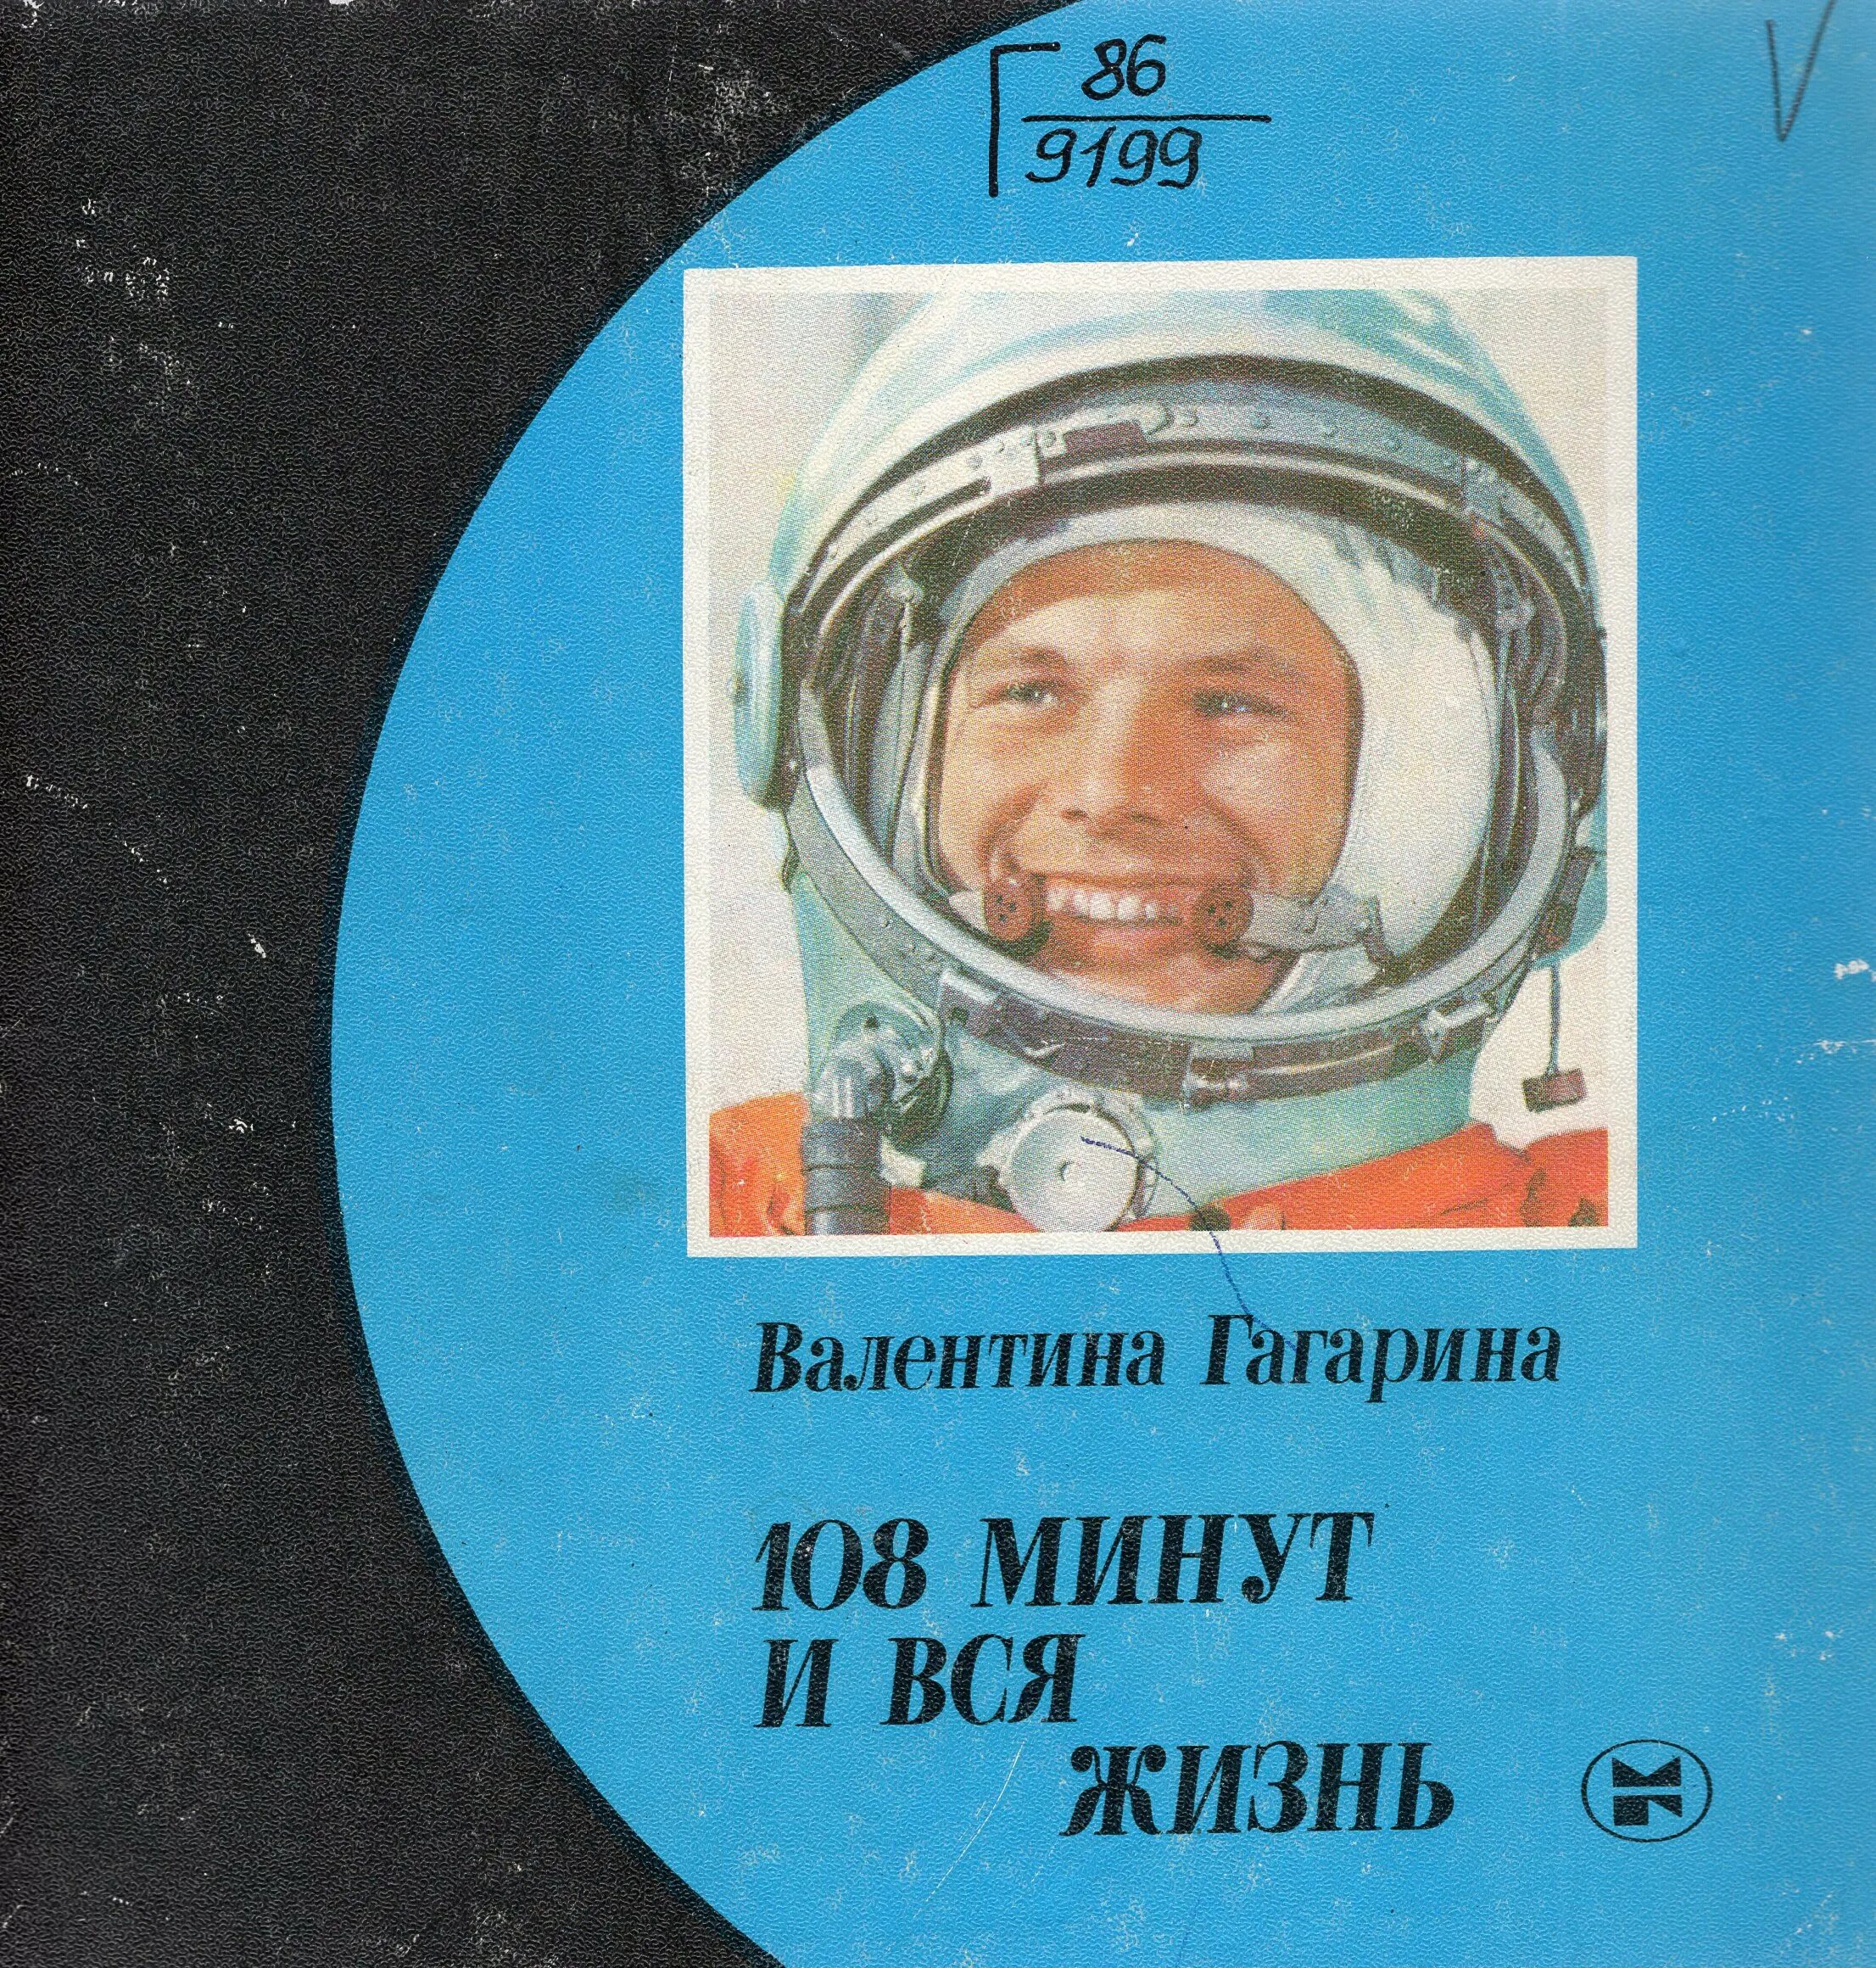 Книга первый космонавт. Гагарина 108 минут и вся жизнь. 108 Минут и вся жизнь книга. Гагарина 108 минут и вся жизнь книга.